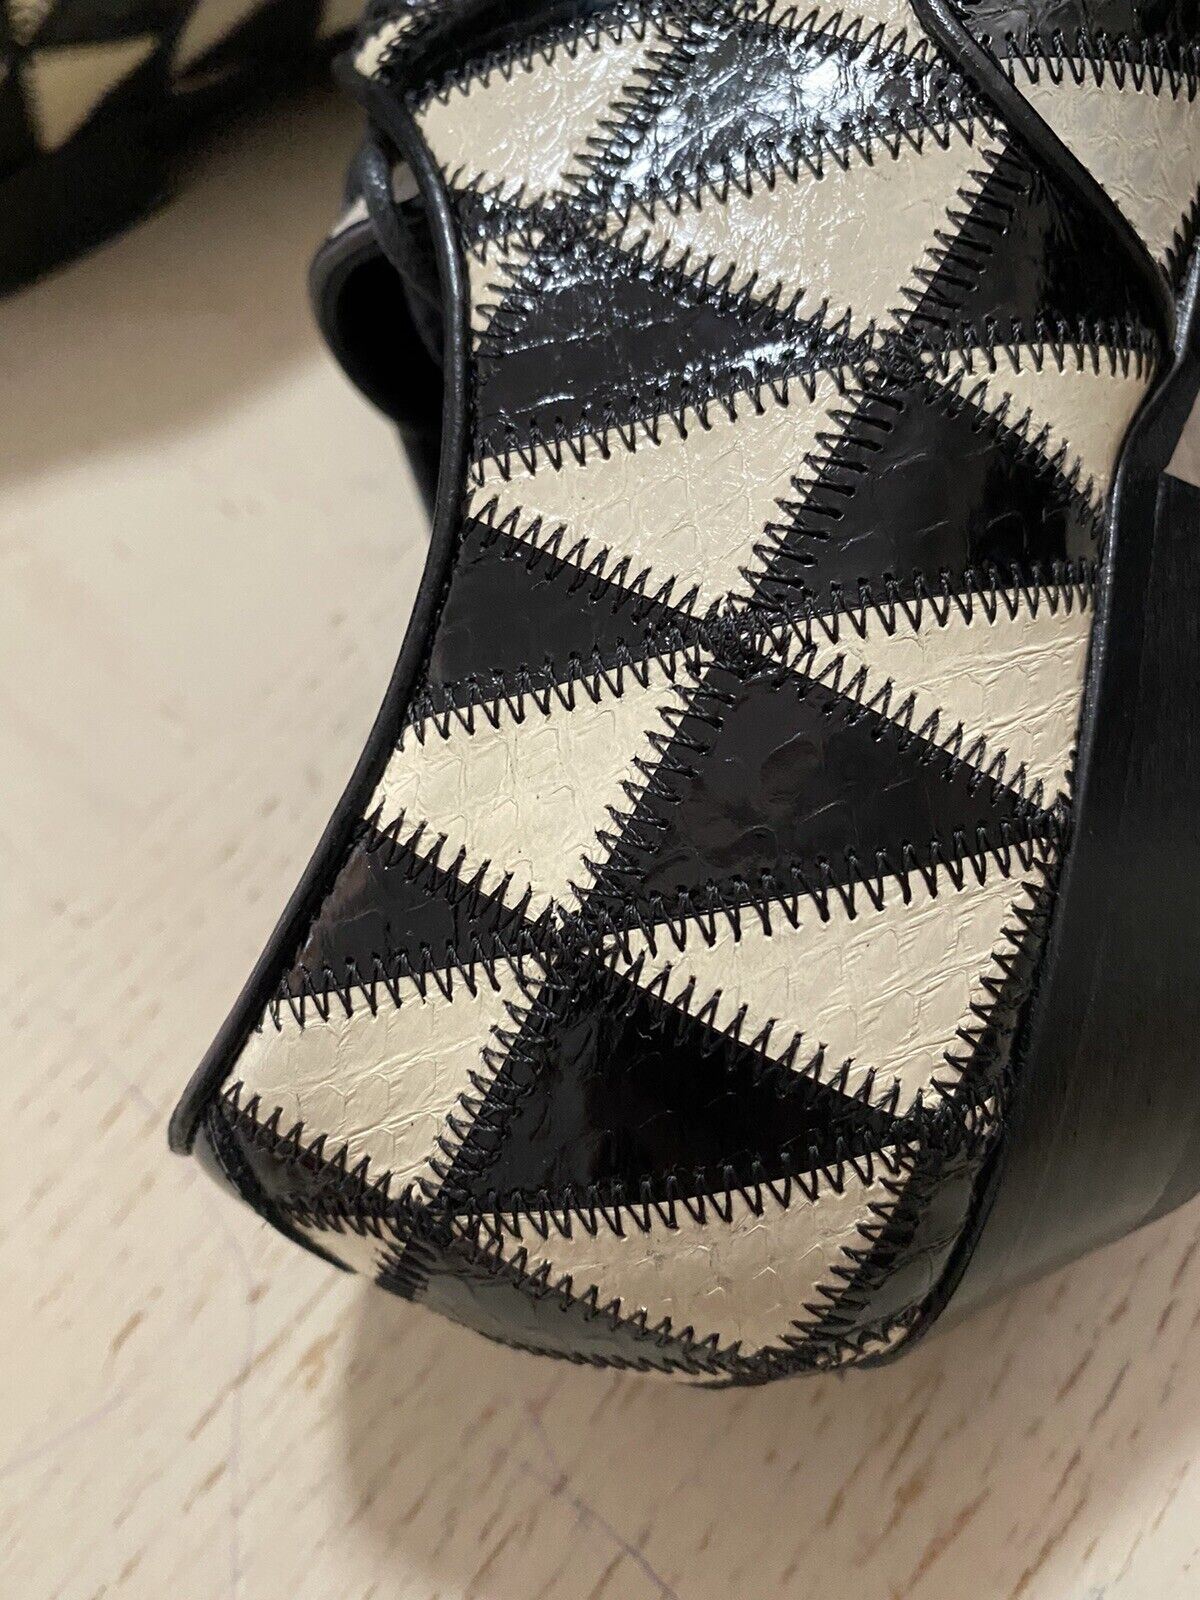 NIB $1795 Saint Laurent Women Python Leather Shoes Black/Ivory 7.5 US/37.5 Eu